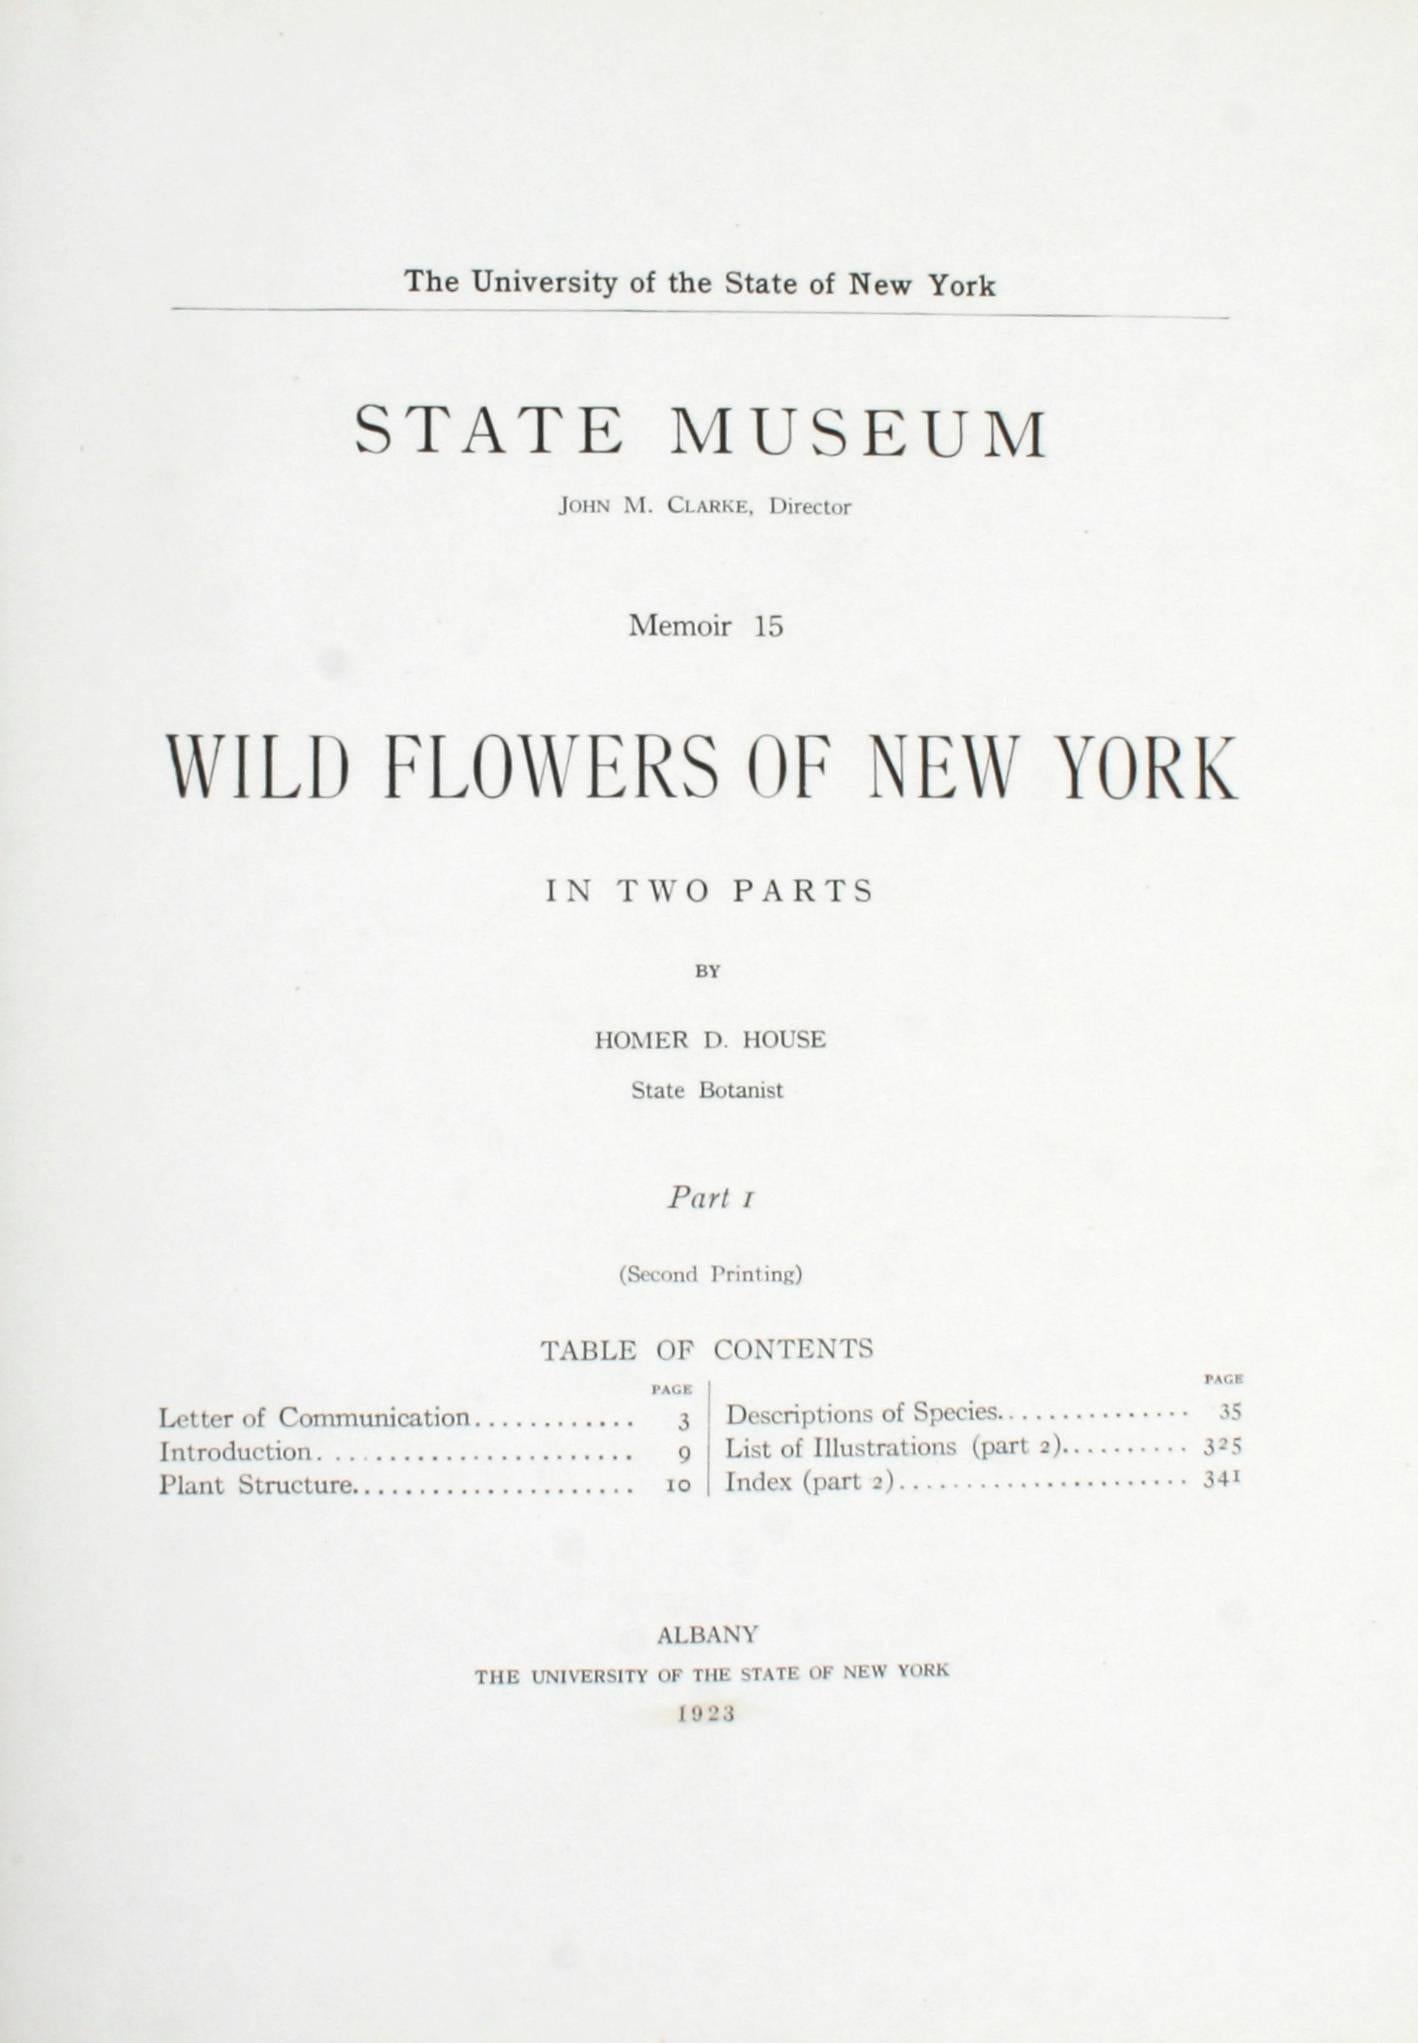 Wild Flowers of New York, Vol. I et II. Albany : L'Université de l'État de New York, 1923. Couvertures rigides de deuxième impression, sans jaquette, telles que publiées. 362 pages de texte et 264 planches en couleur. Une paire de beaux livres de